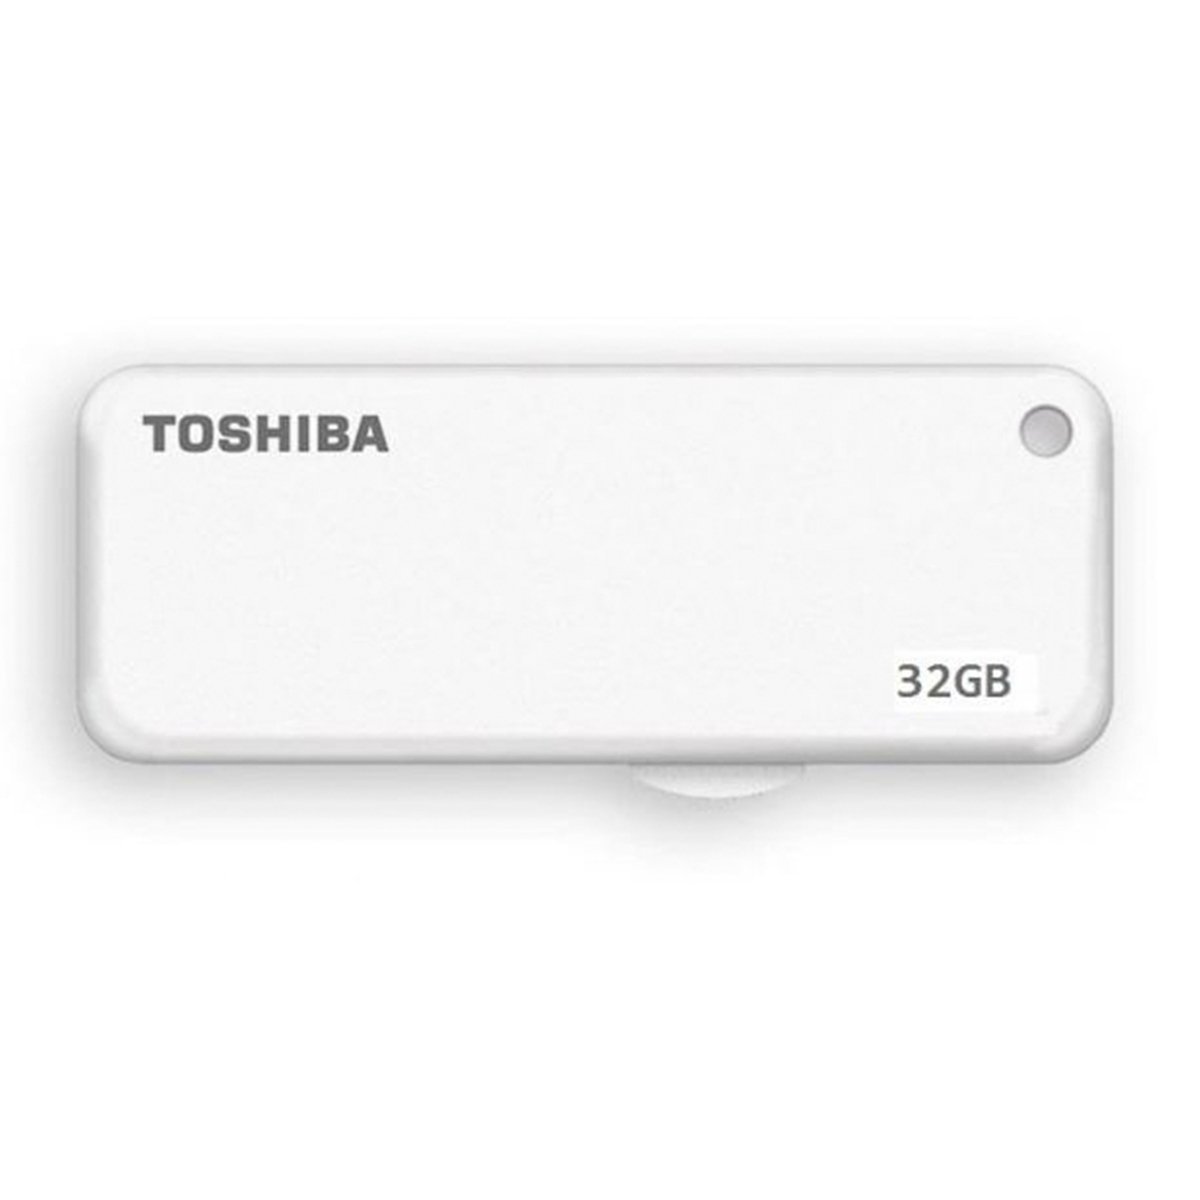 اشتري قم بشراء Toshiba Flash Drive THNU012HAY 32GB Online at Best Price من الموقع - من لولو هايبر ماركت USB Flash Drives في السعودية